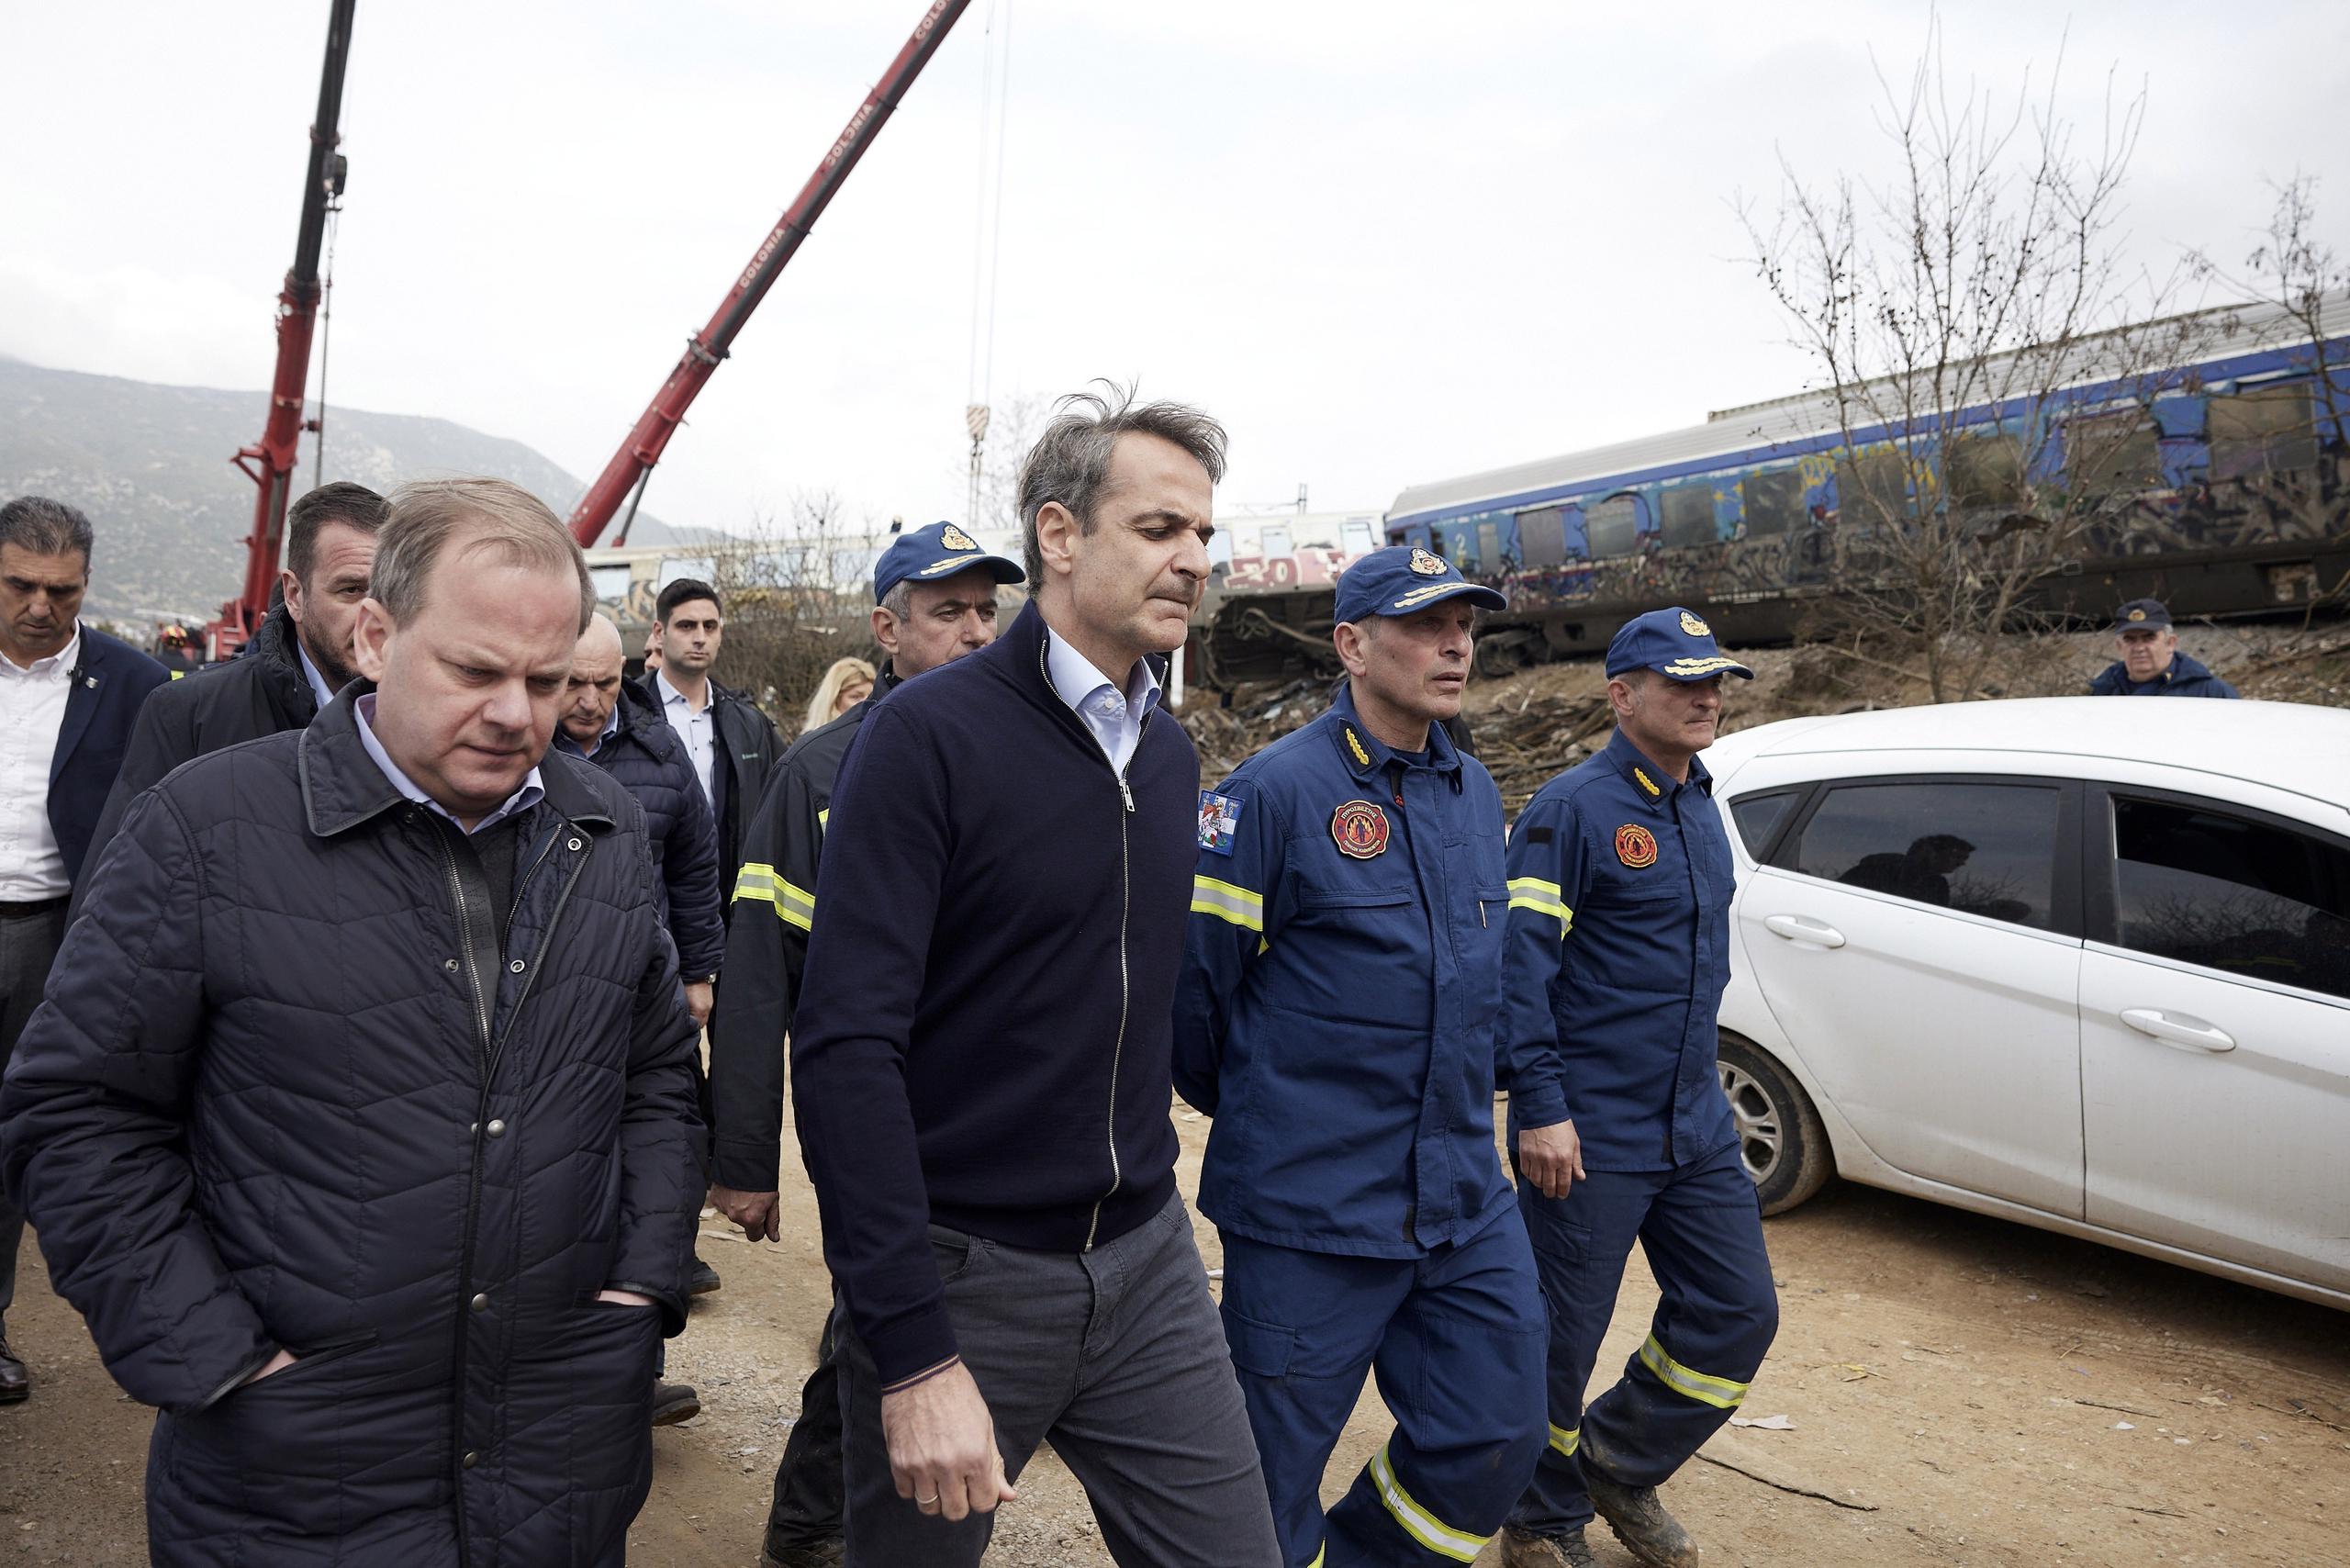 El primer ministro de Grecia, Kyriakos Mitsotakis, en el centro, llegó a la escena con el jefe saliente de transporte, Kostas Karamanlis, a la izquierda, quien presentó su renuncia horas después del incidente que dejó a más de 40 personas muertas.